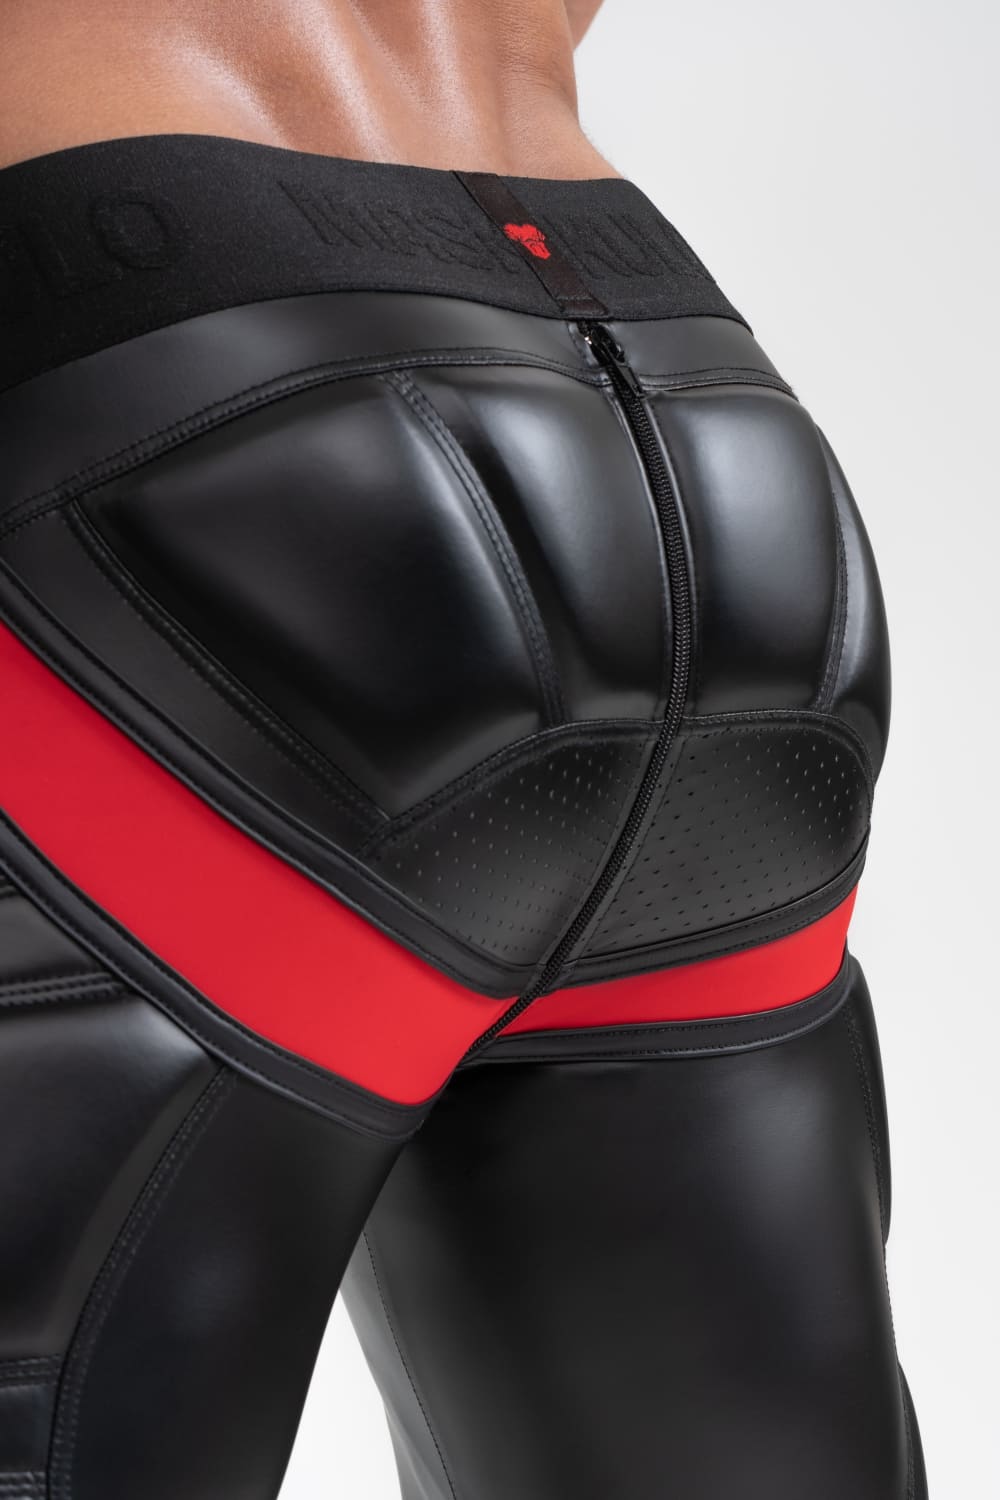 Cycling Shorts 'Big Bulge'. Black+Red